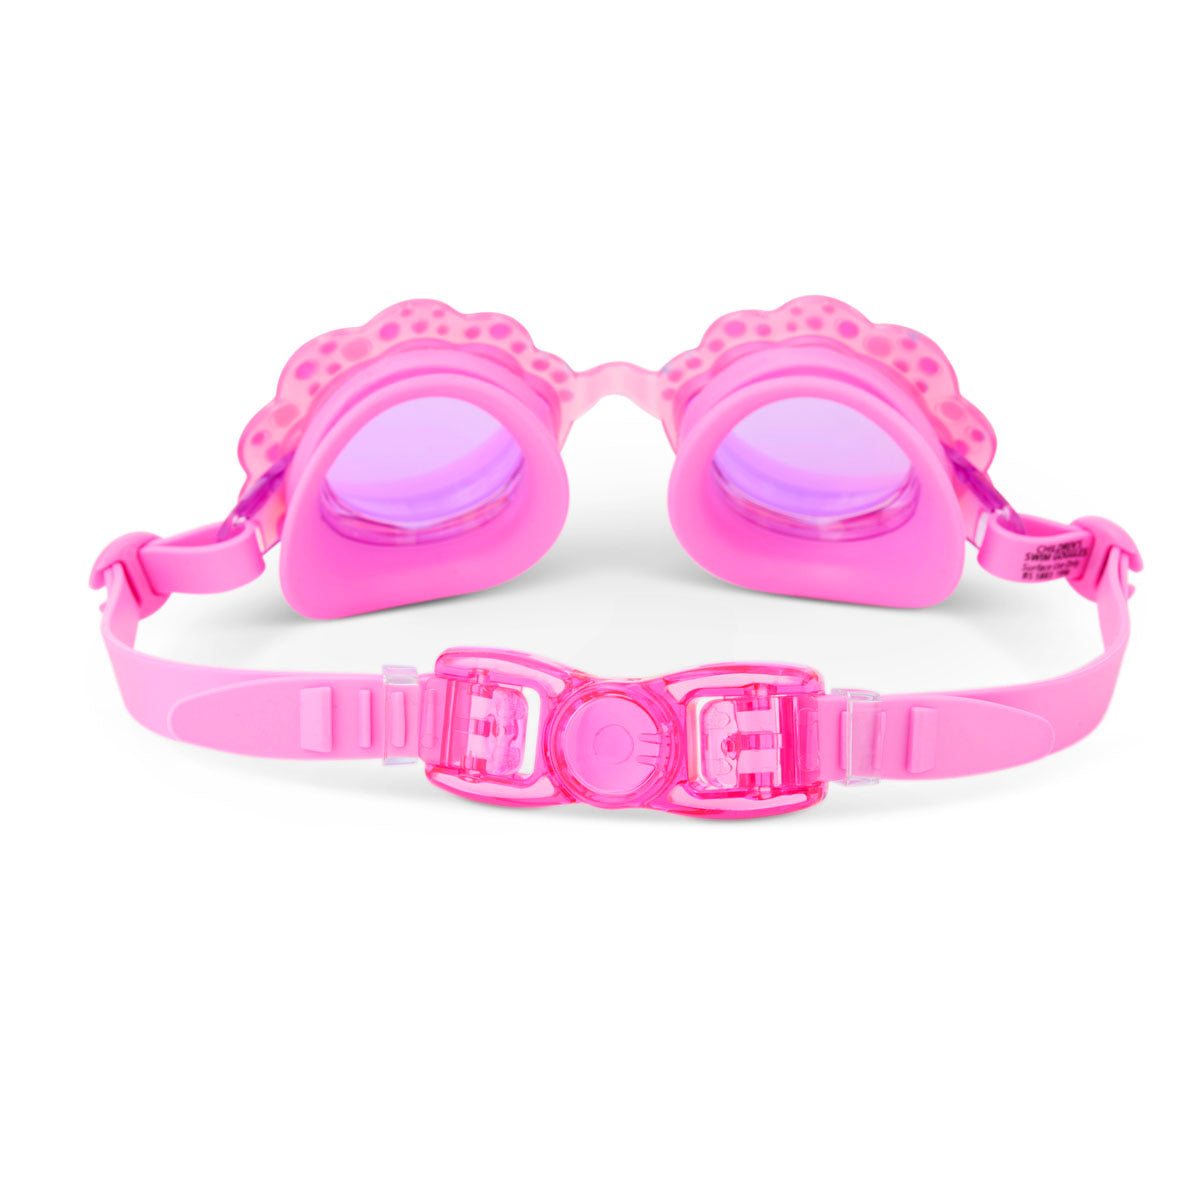 Bling2o Seashell Pink Goggles